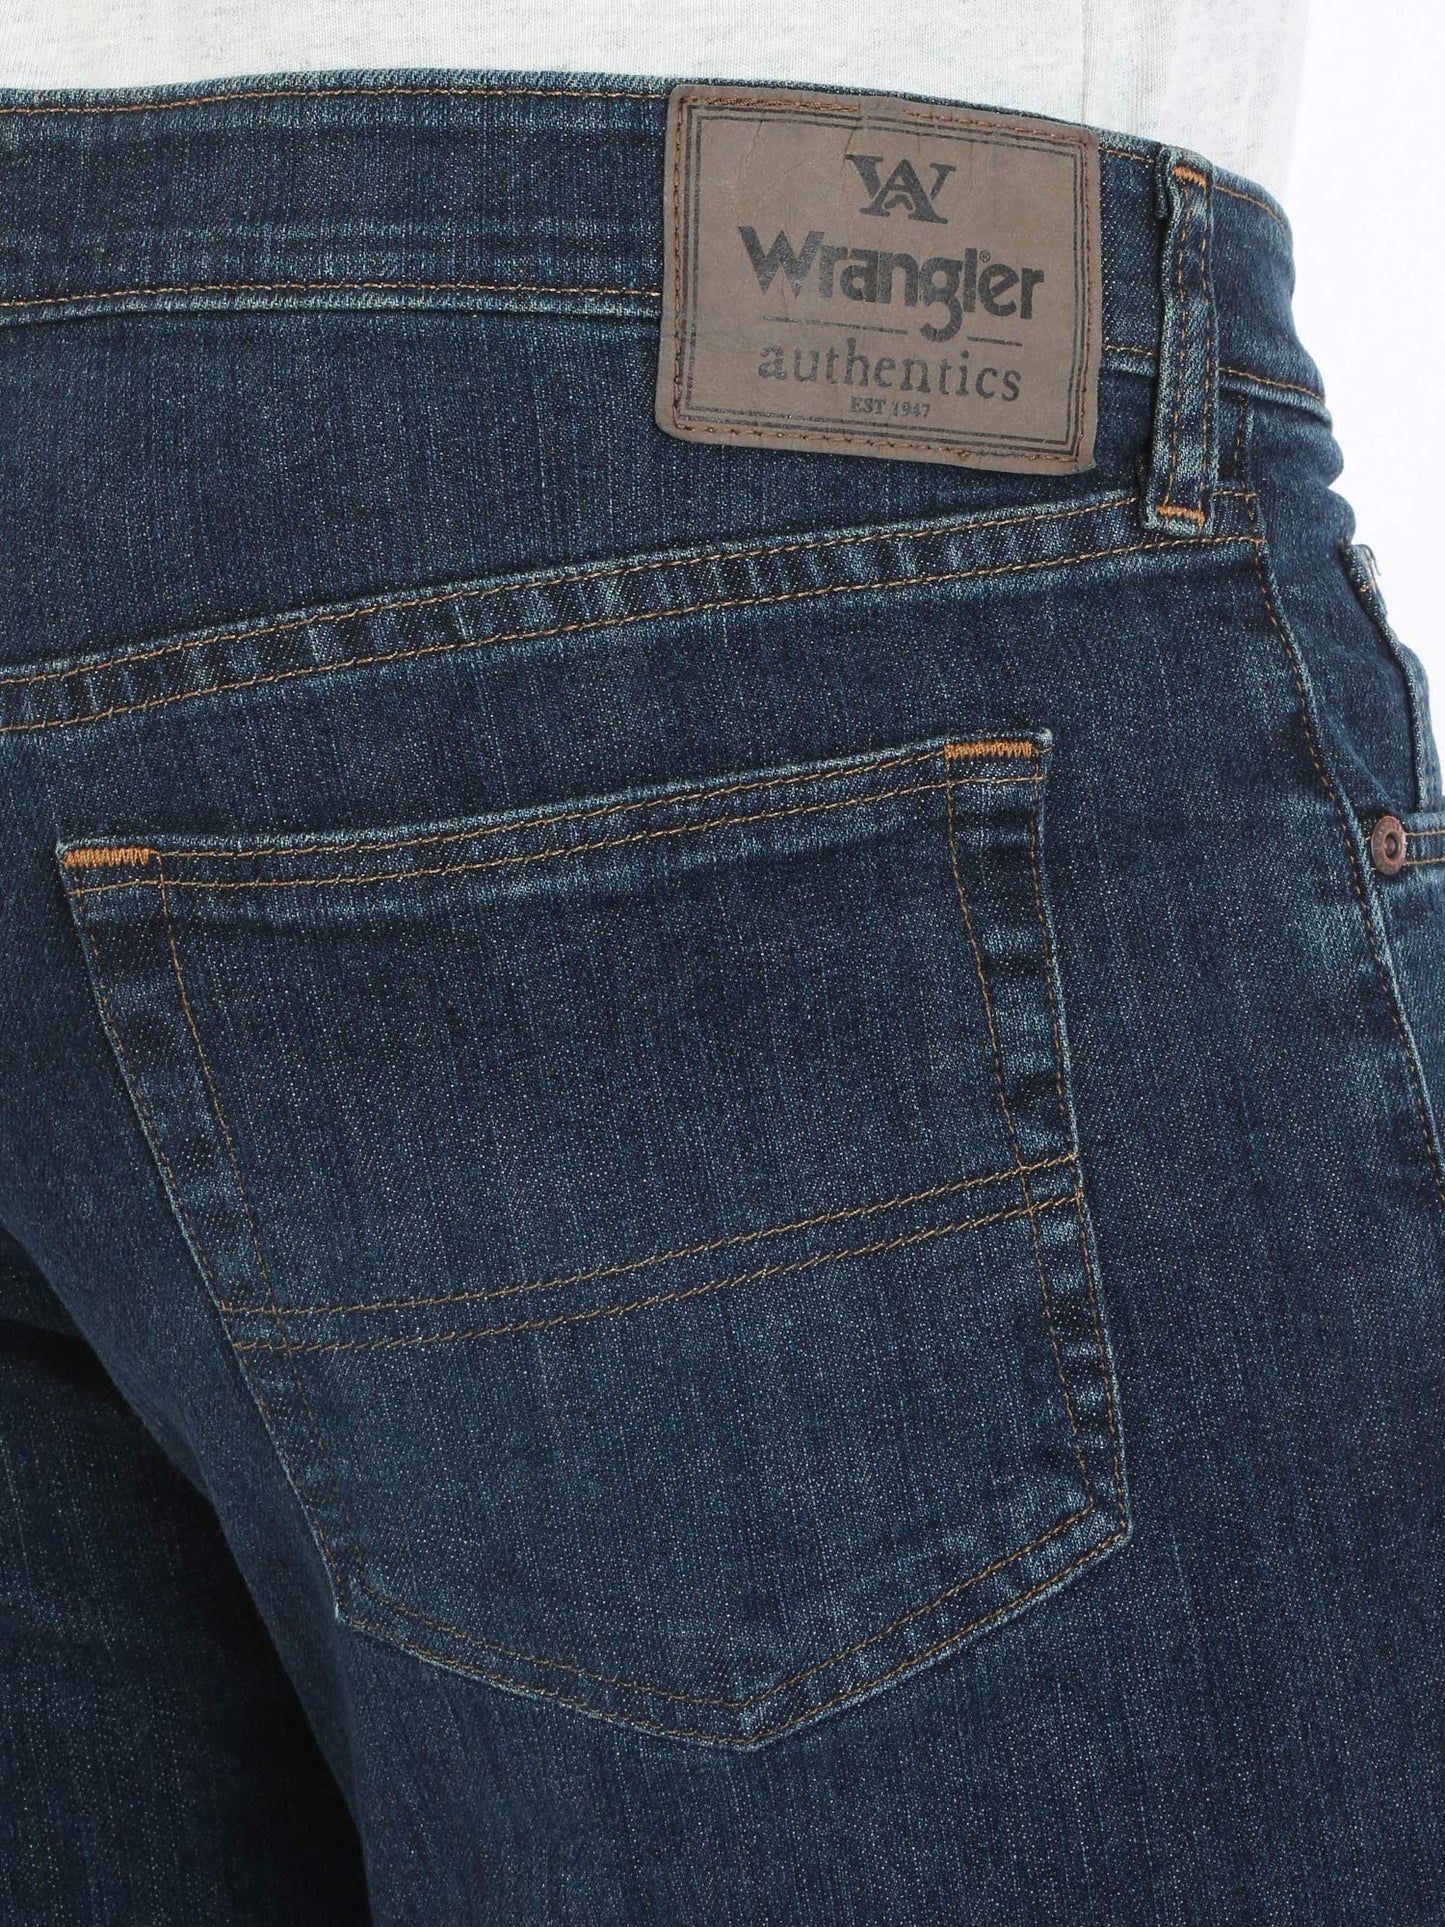 Wrangler Authentics Men's Comfort Flex Waist Relaxed Fit Jean, Carbon, 38W x 30L